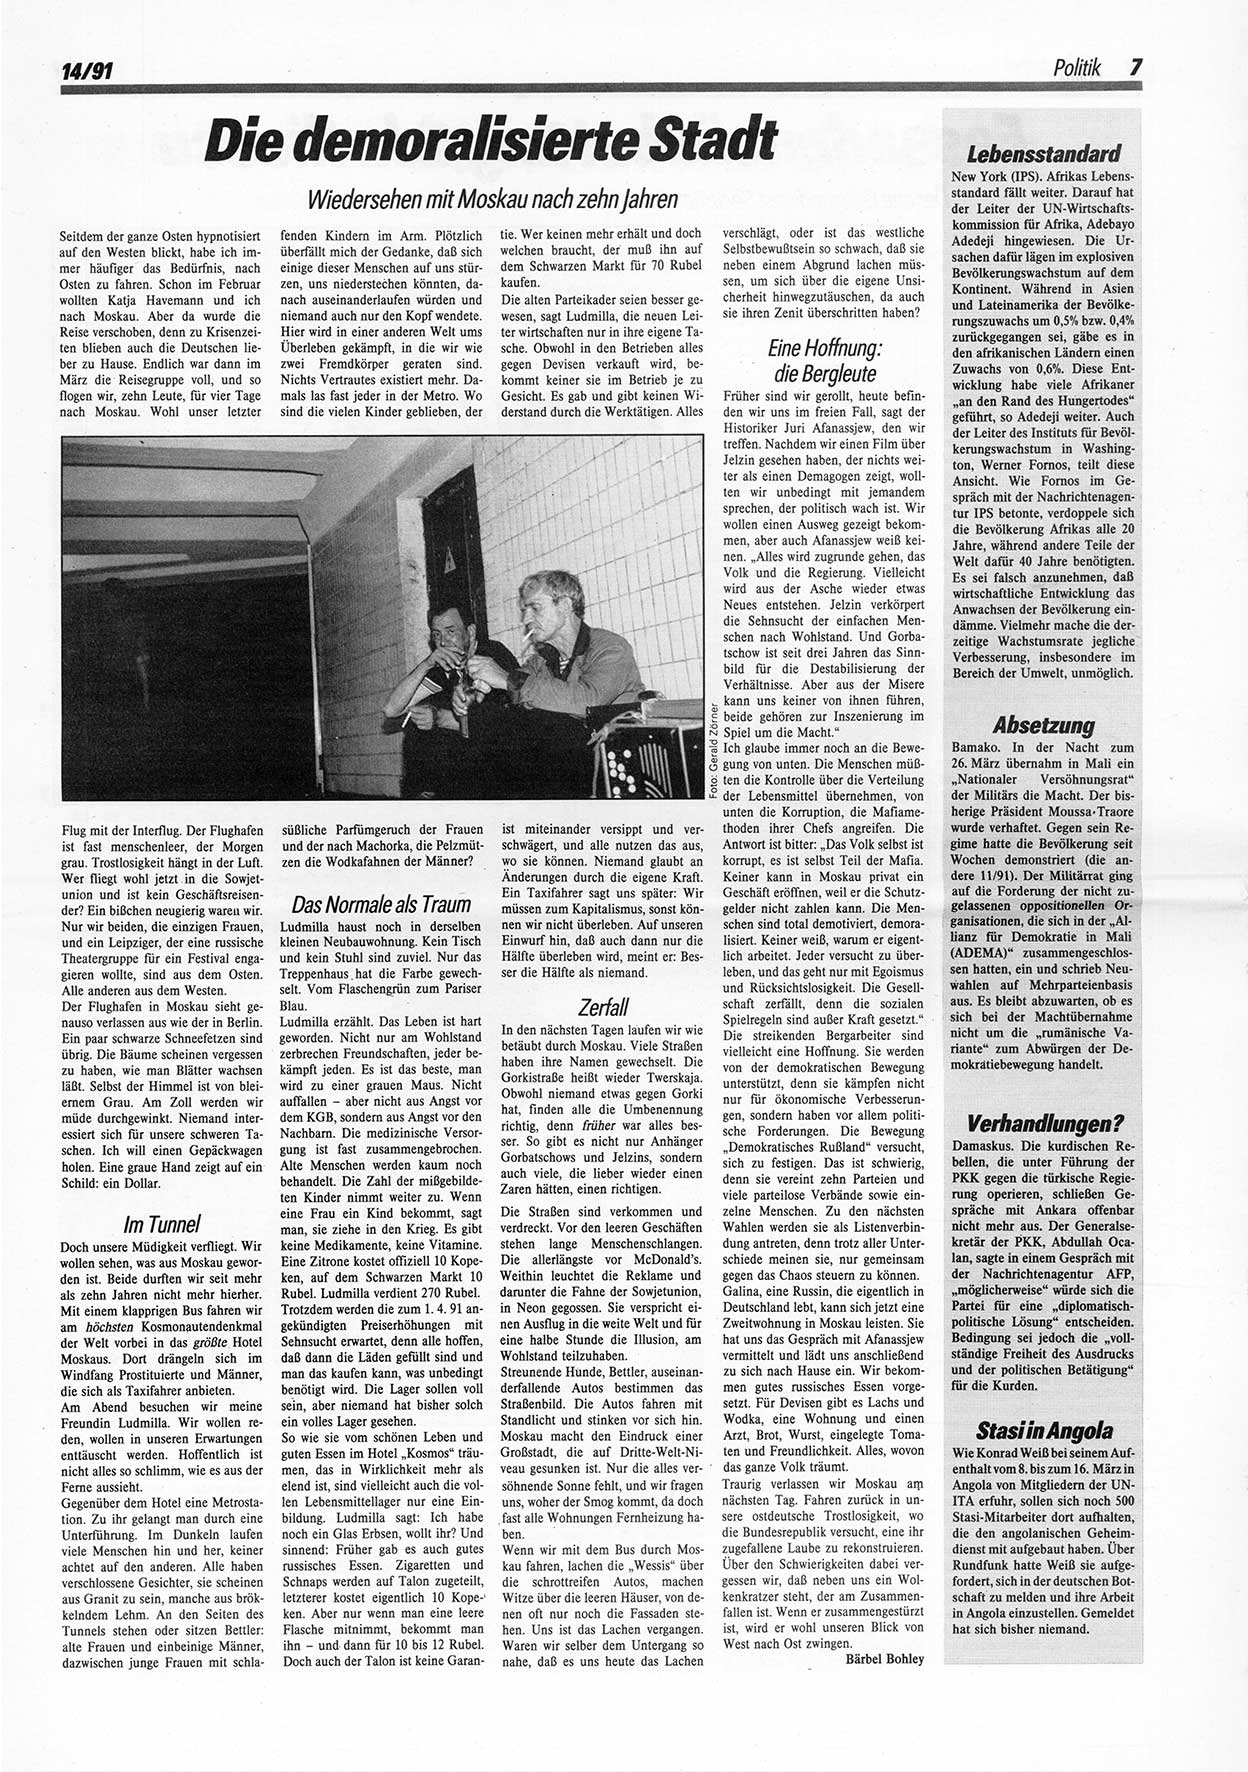 Die Andere, Unabhängige Wochenzeitung für Politik, Kultur und Kunst, Ausgabe 14 vom 3.4.1991, Seite 7 (And. W.-Zg. Ausg. 14 1991, S. 7)